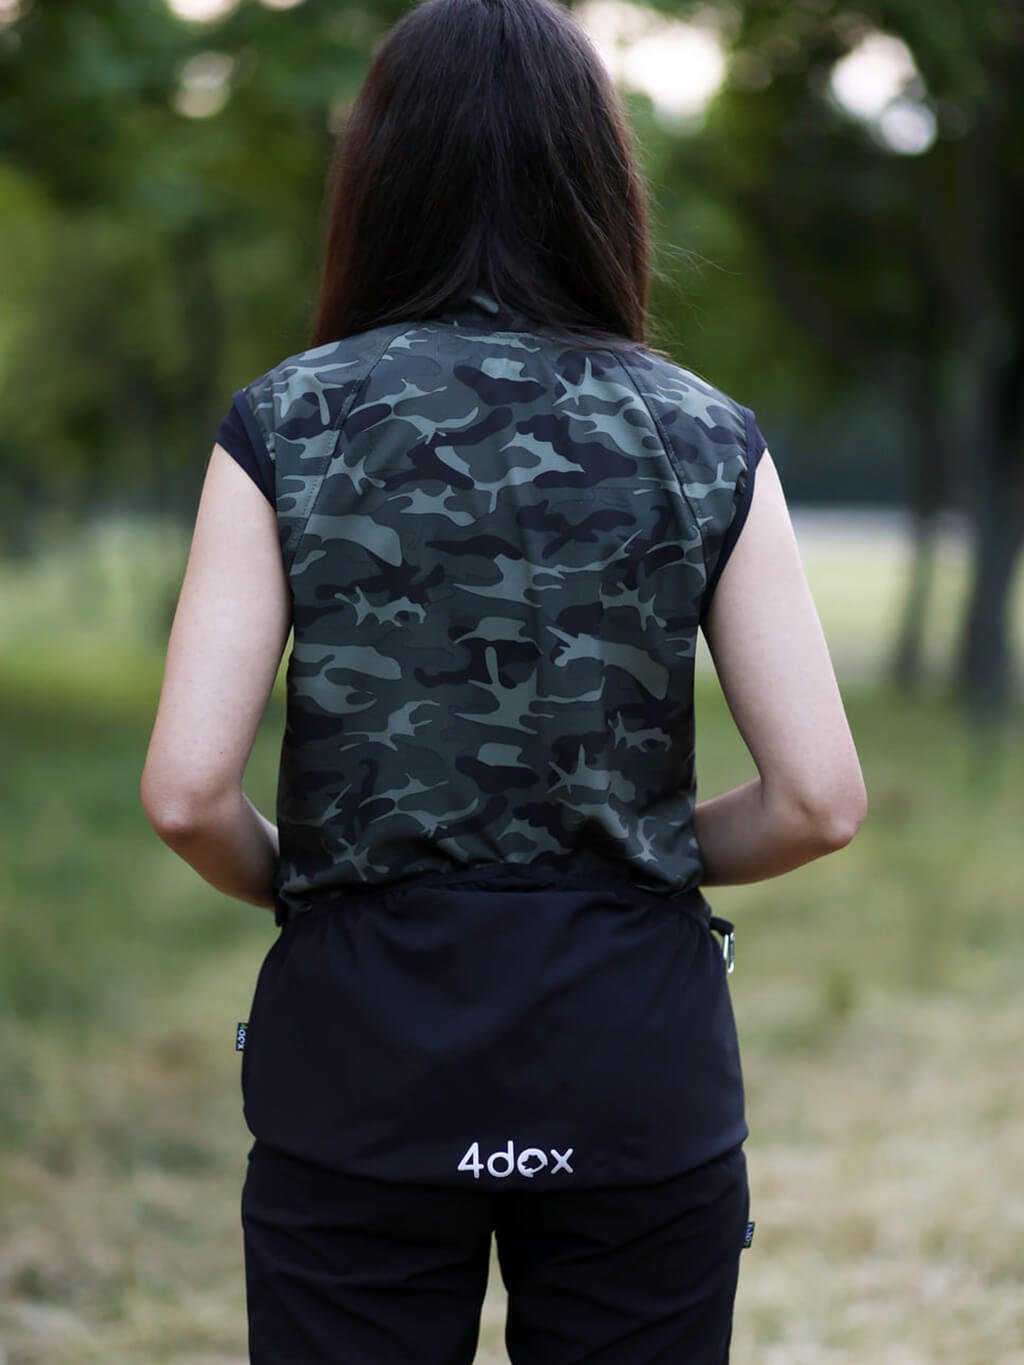 Ladies summer training vest 4dox - camouflage